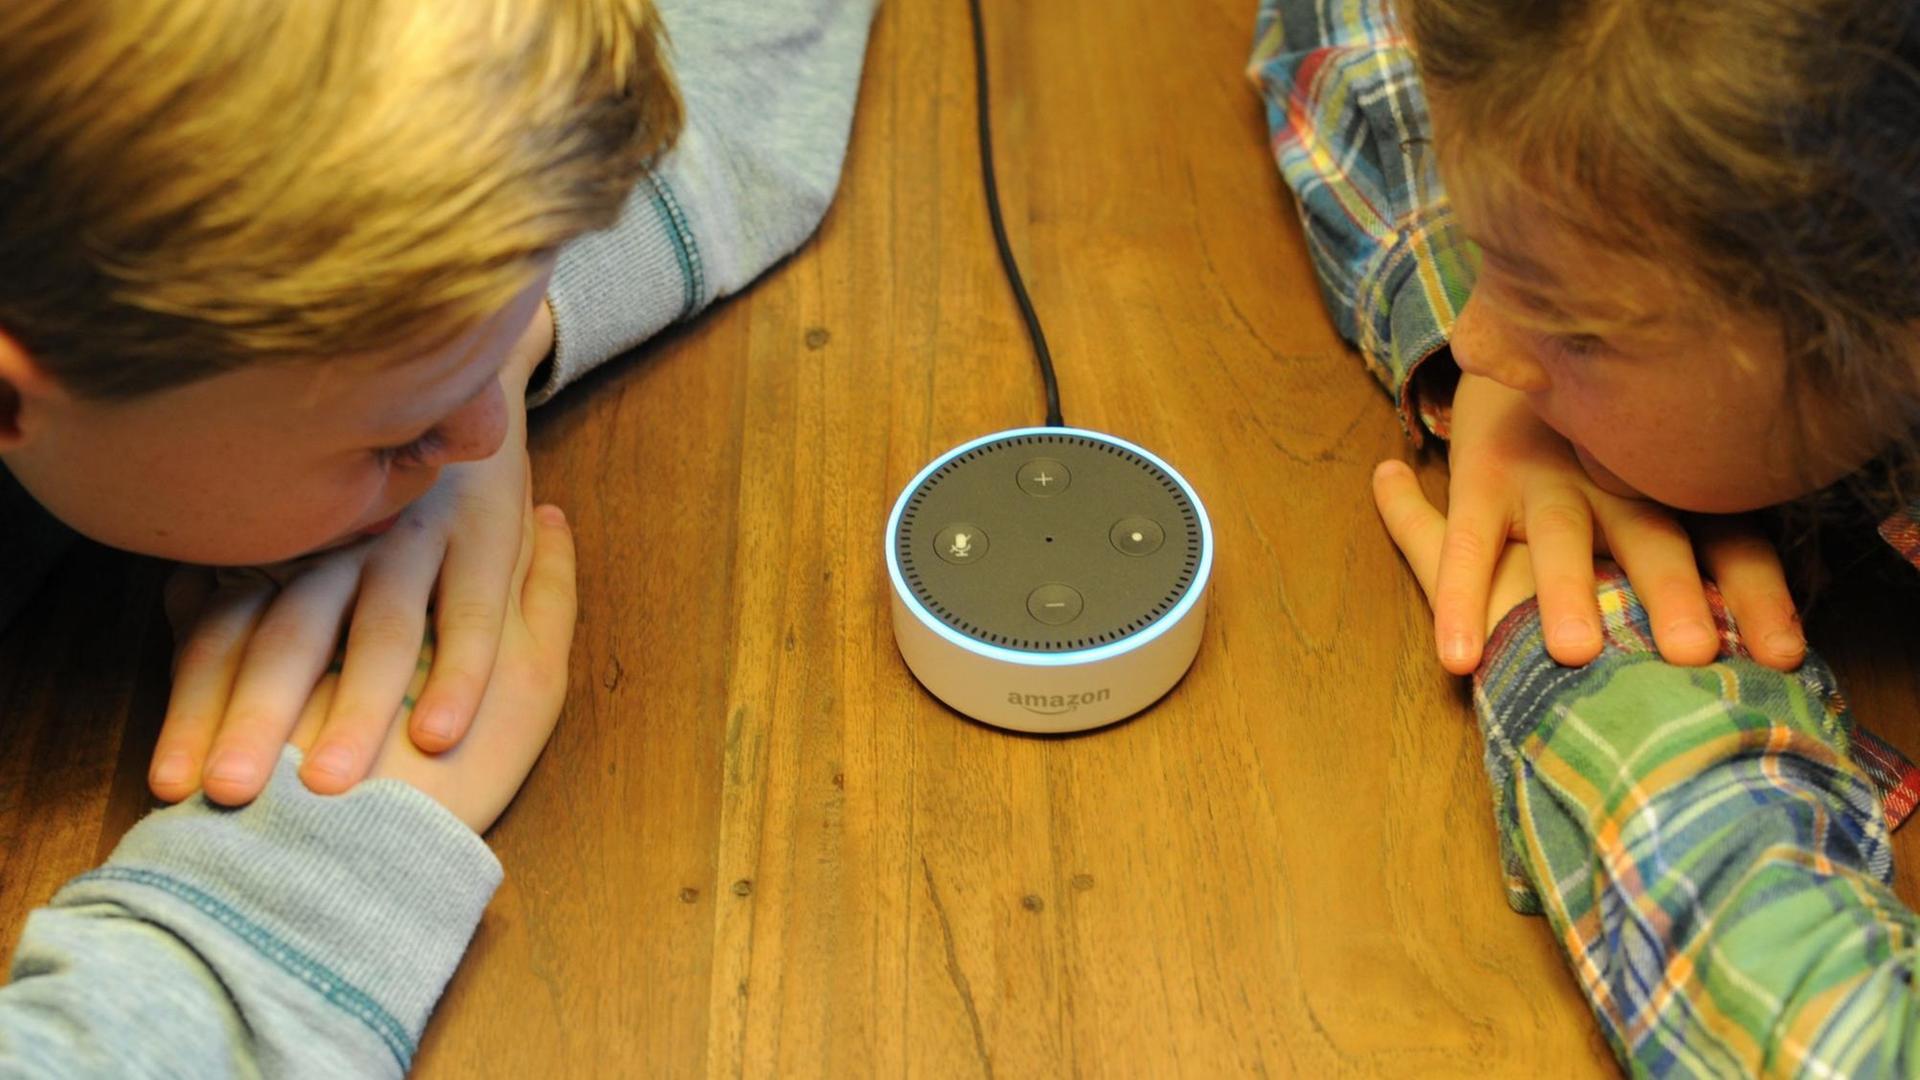 Der Amazon Echo Dot ist ein Lautsprecher, der auf den Namen "Alexa" hört und als Sprachschnittstelle zu Amazon-Produkten fungiert. Er steht auf einem Tisch. Zwei Kinder lehnen sich mit Händen und Köpfen auf den Tisch und schauen den Lautsprecher an.